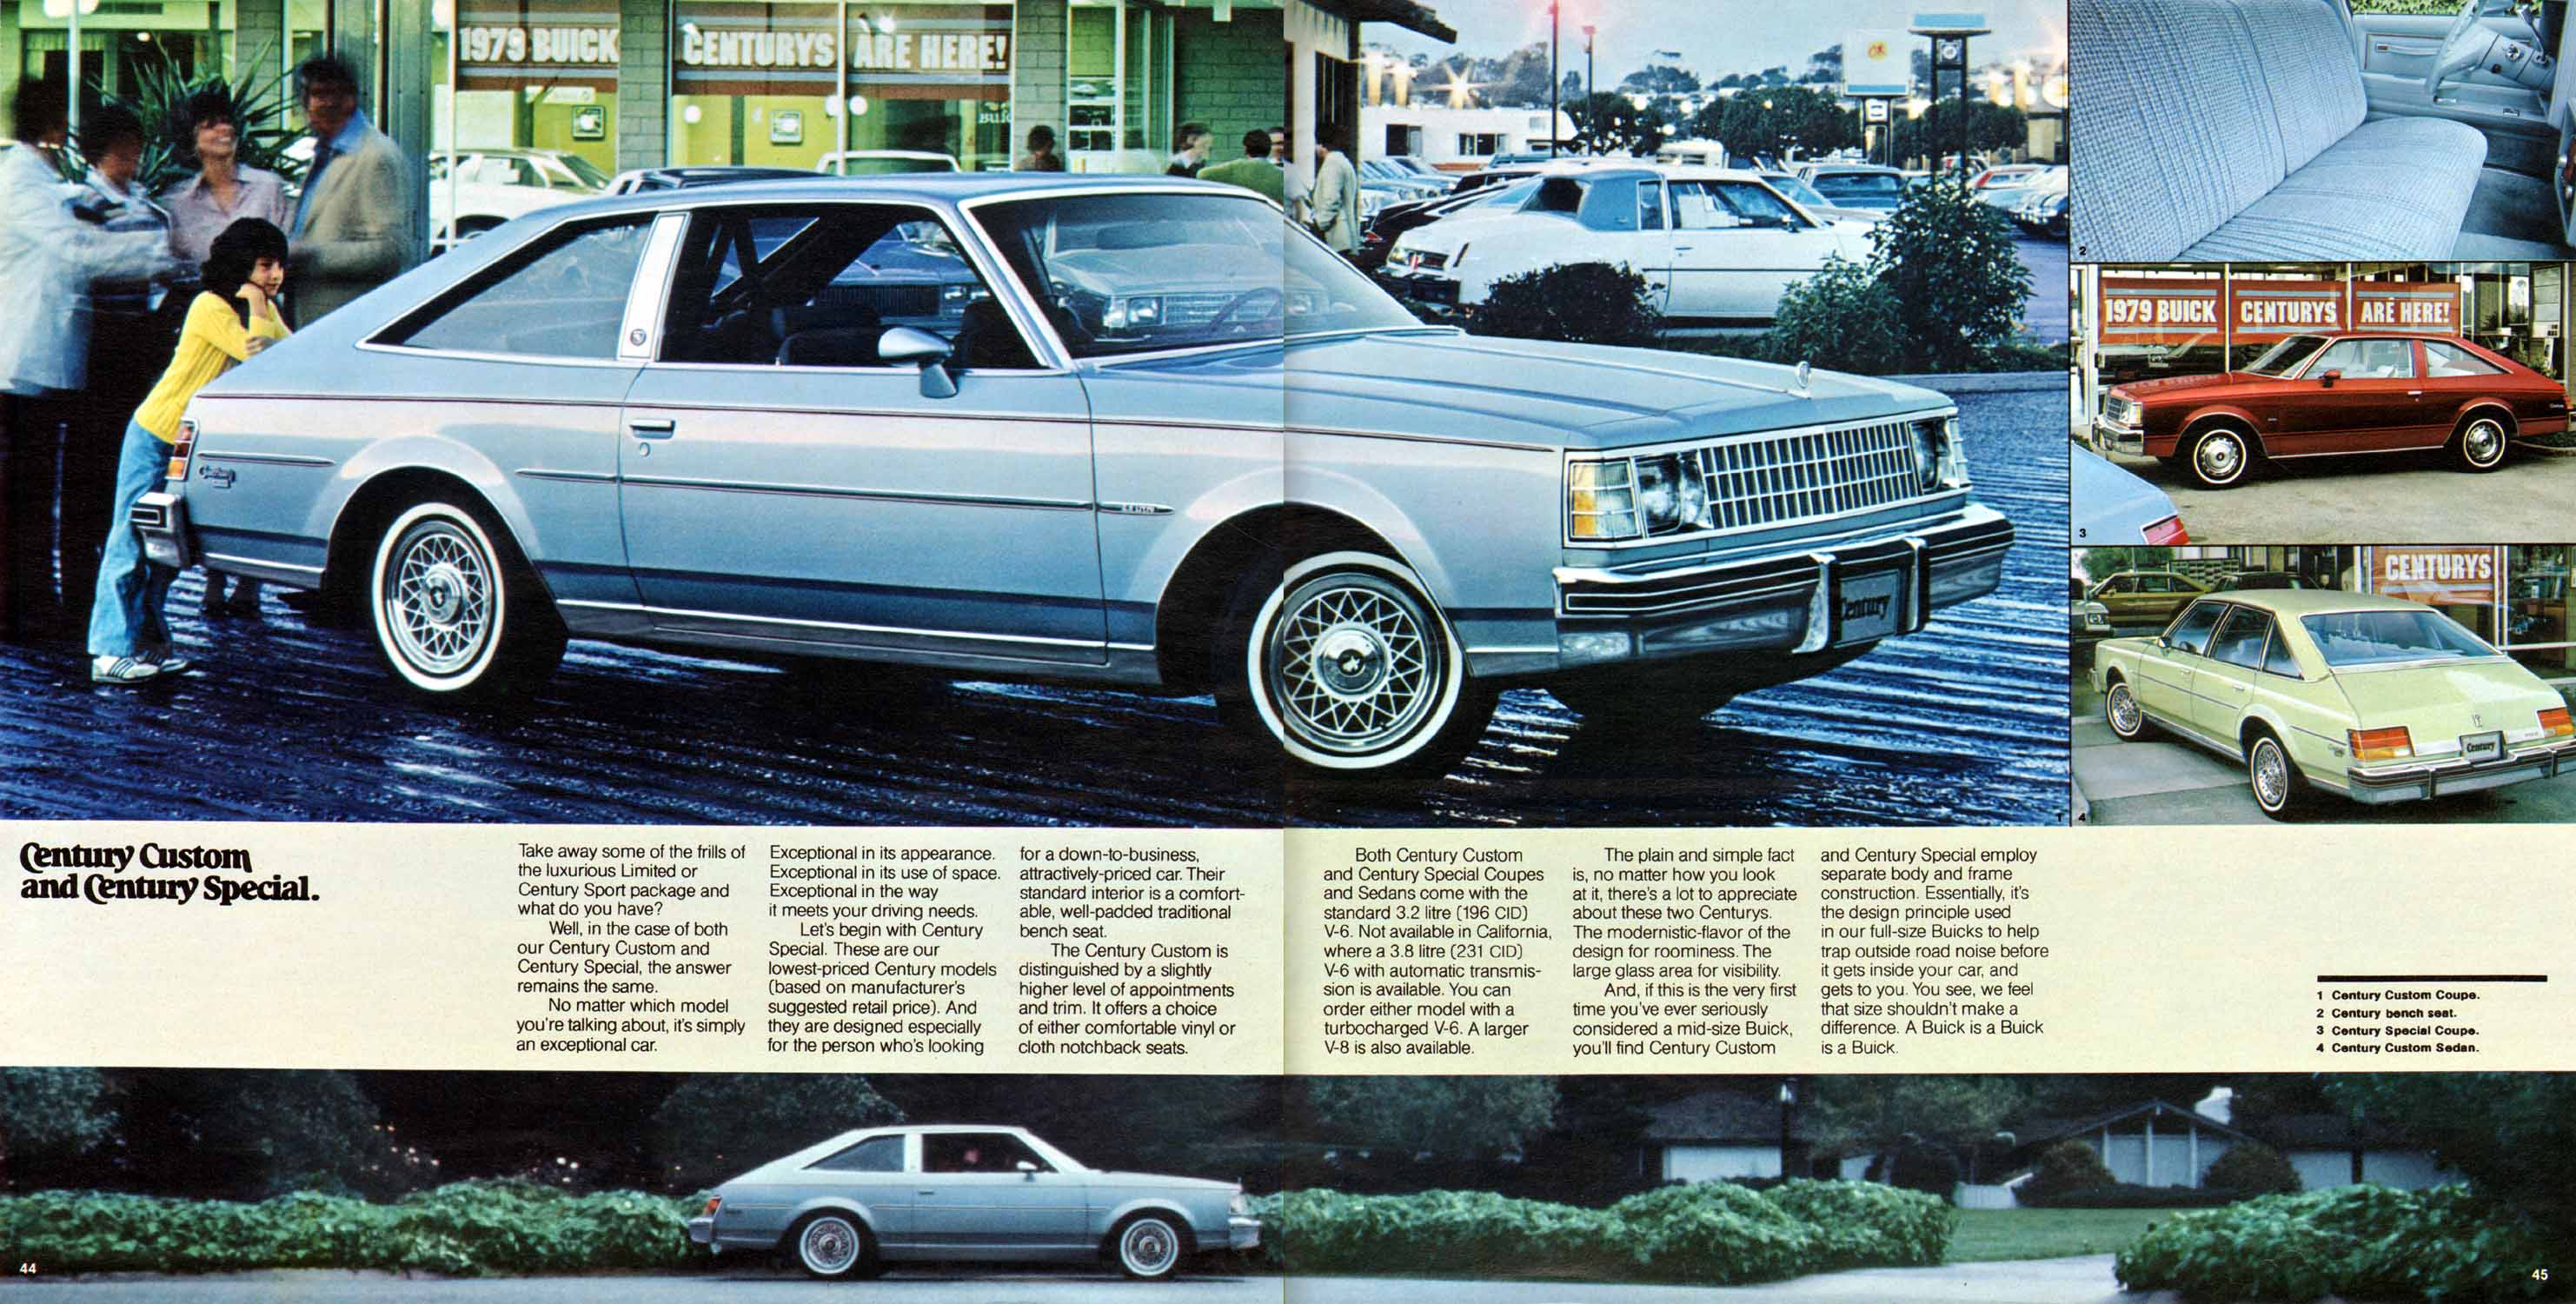 1979 Buick Full Line Prestige-44-45